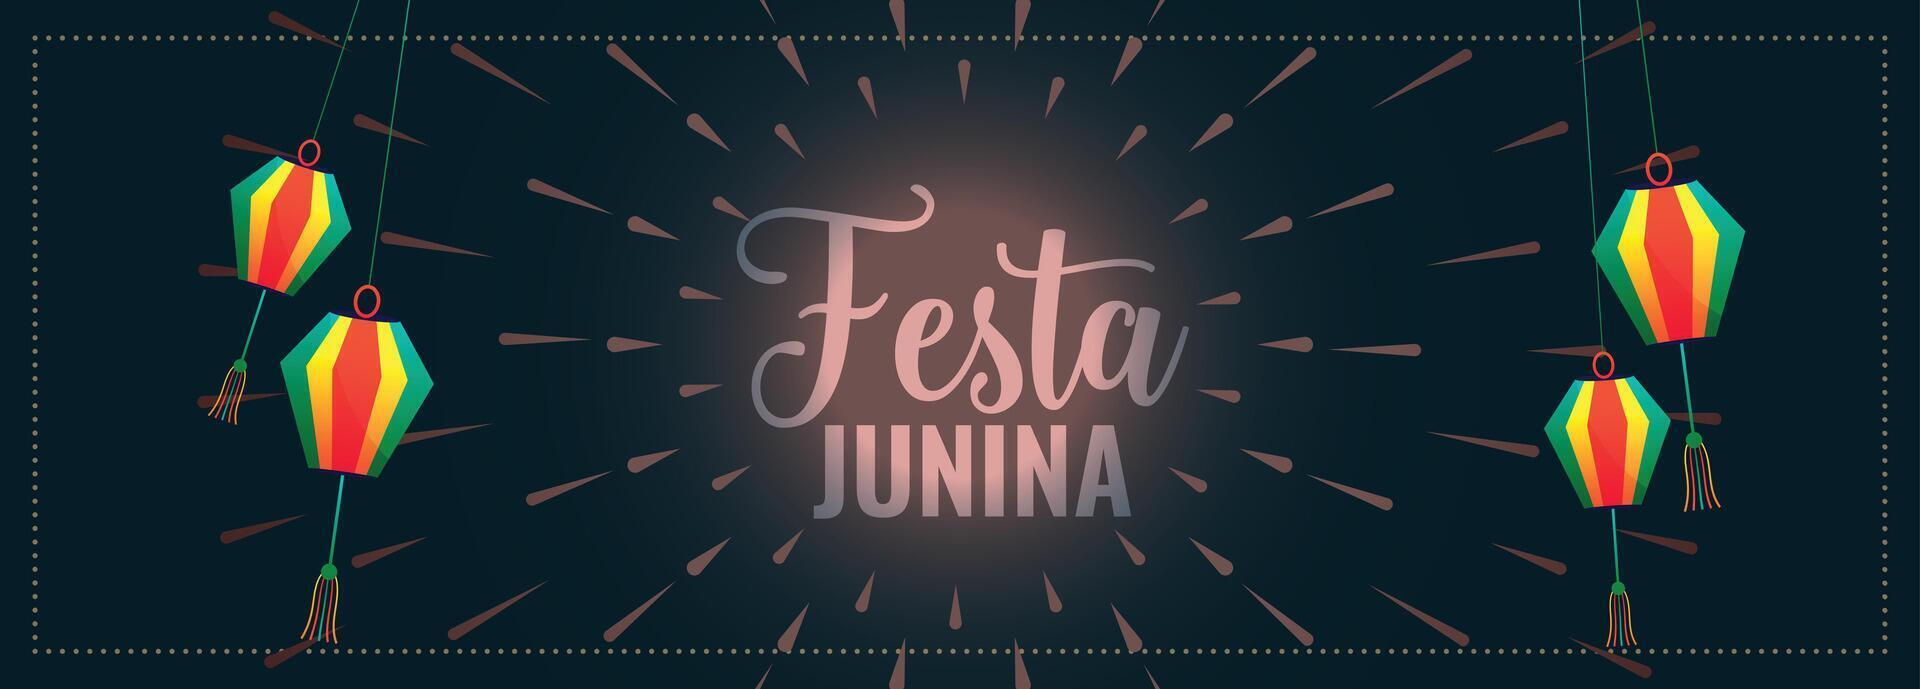 traditionnel festa Junina Festival bannière avec lanterne décoration vecteur